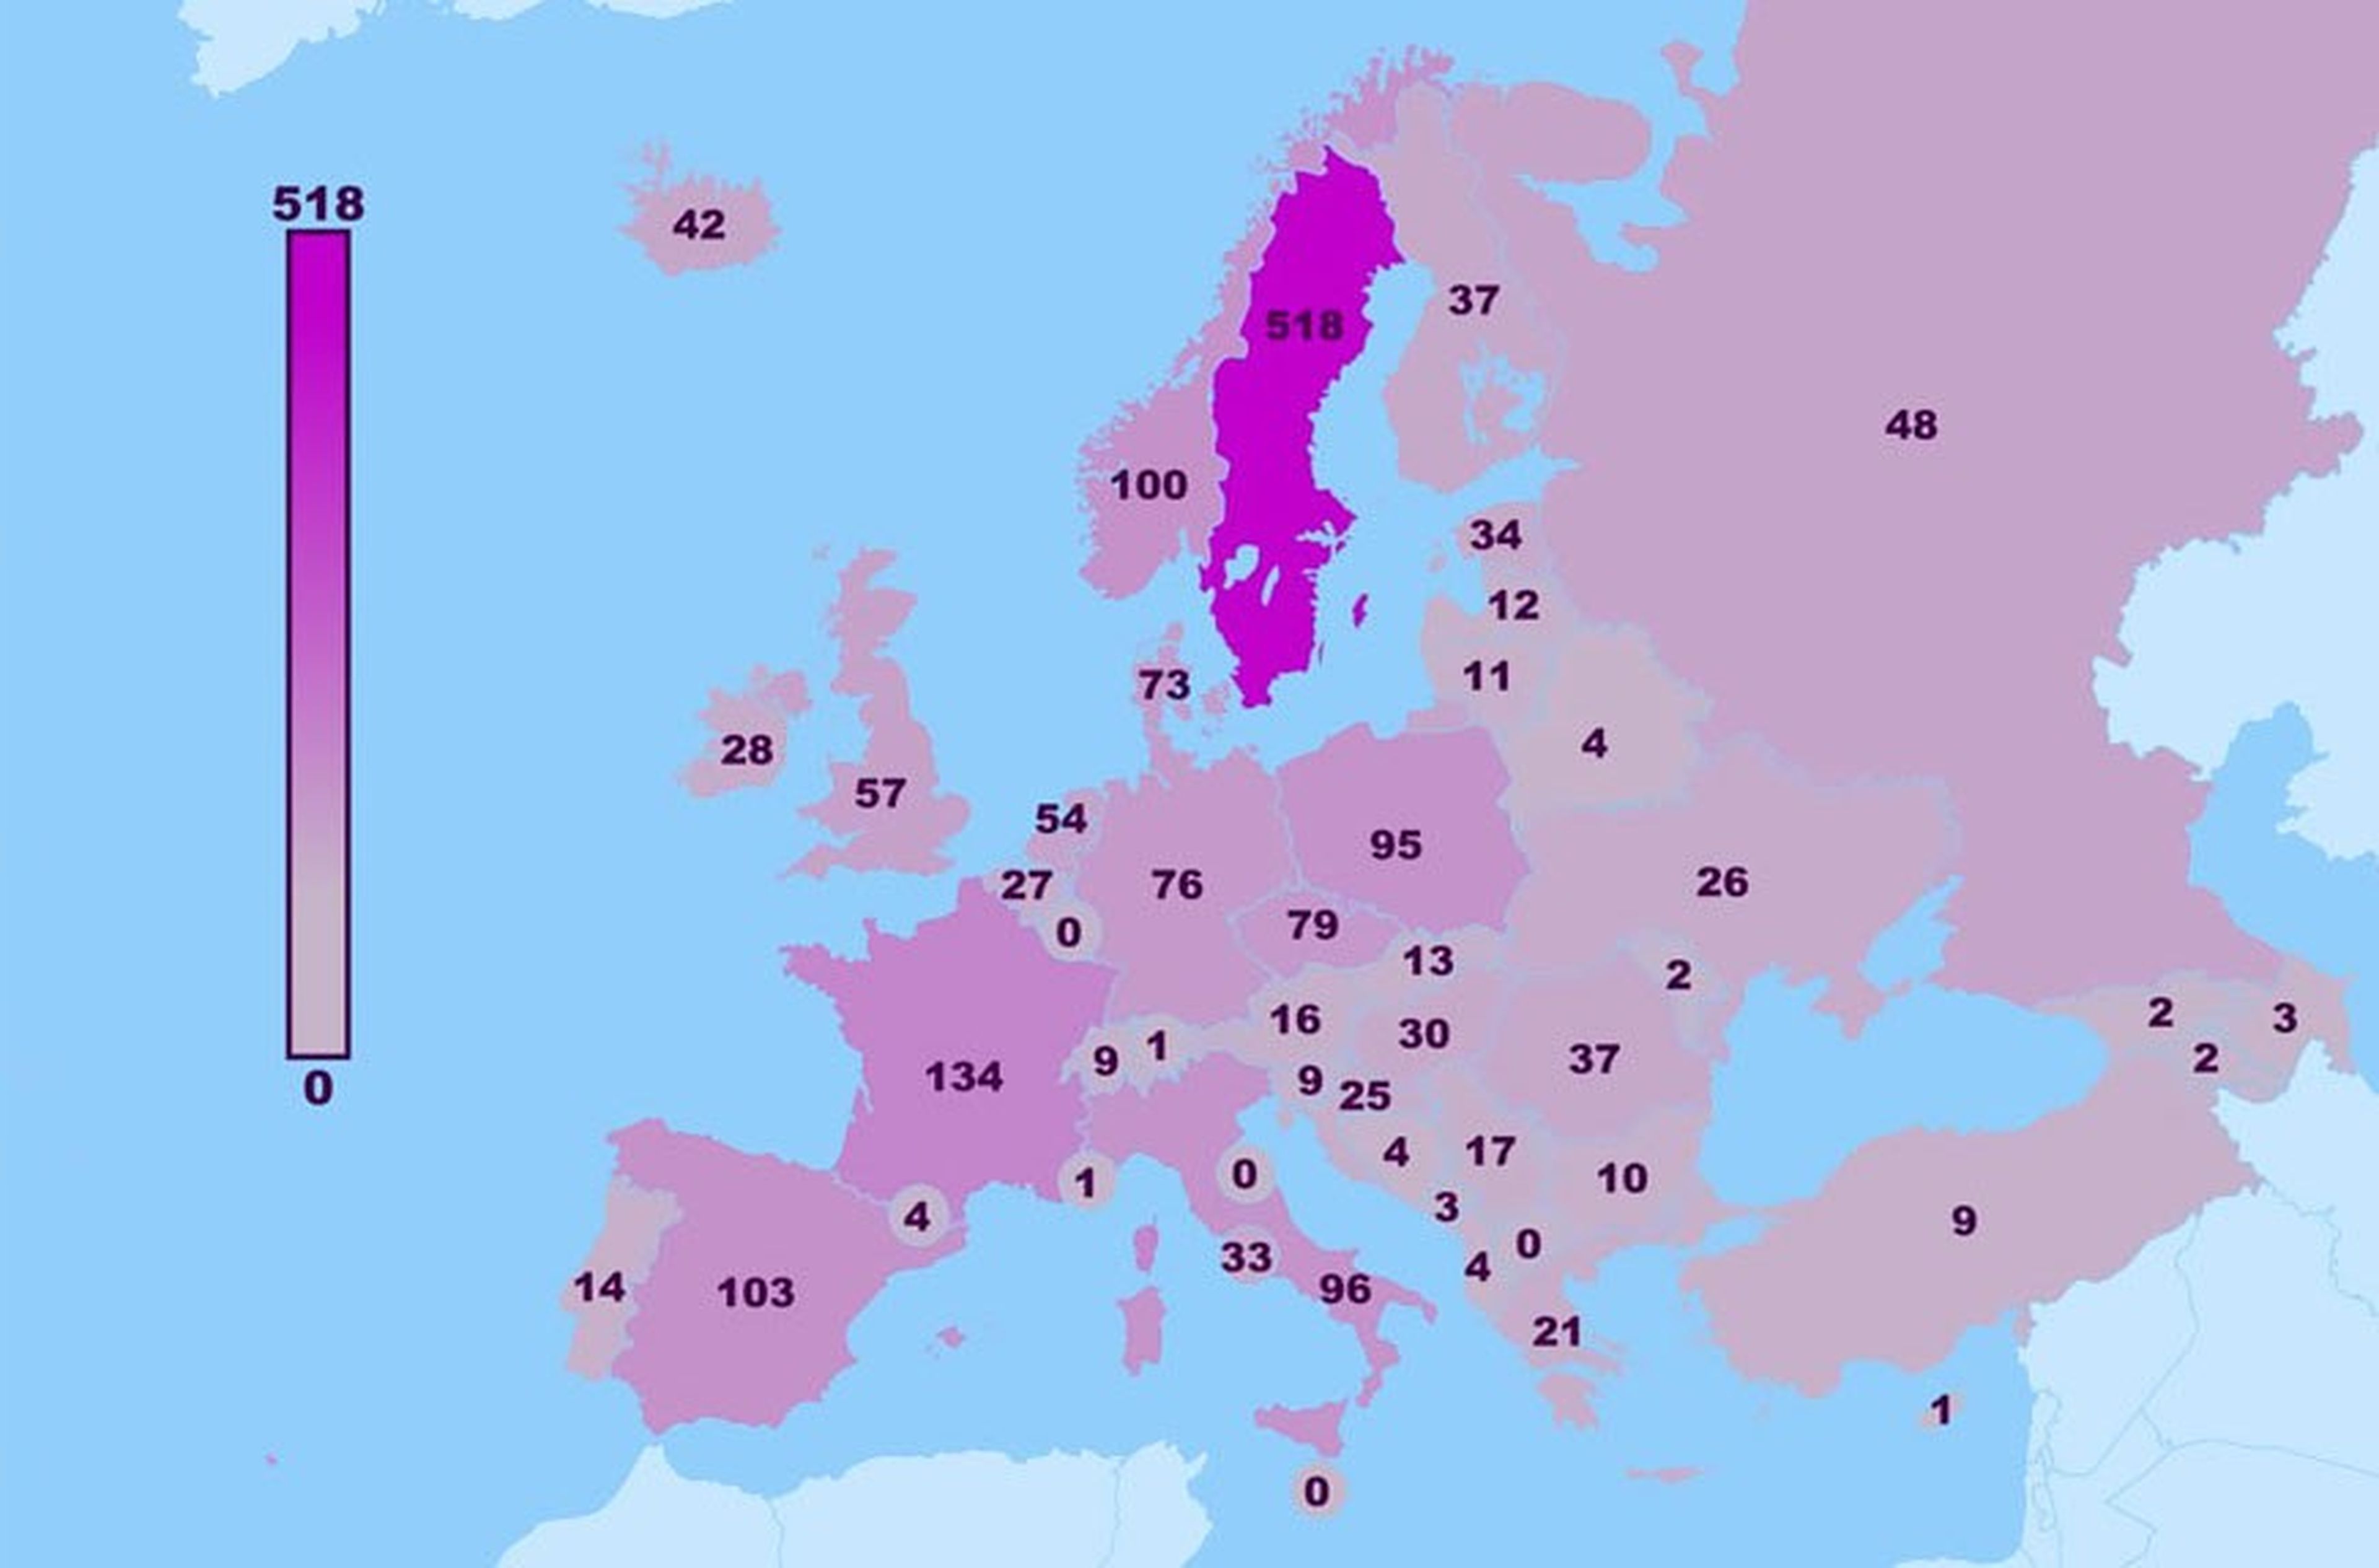 mapa de países europeos por número de personas guapas que viven en él